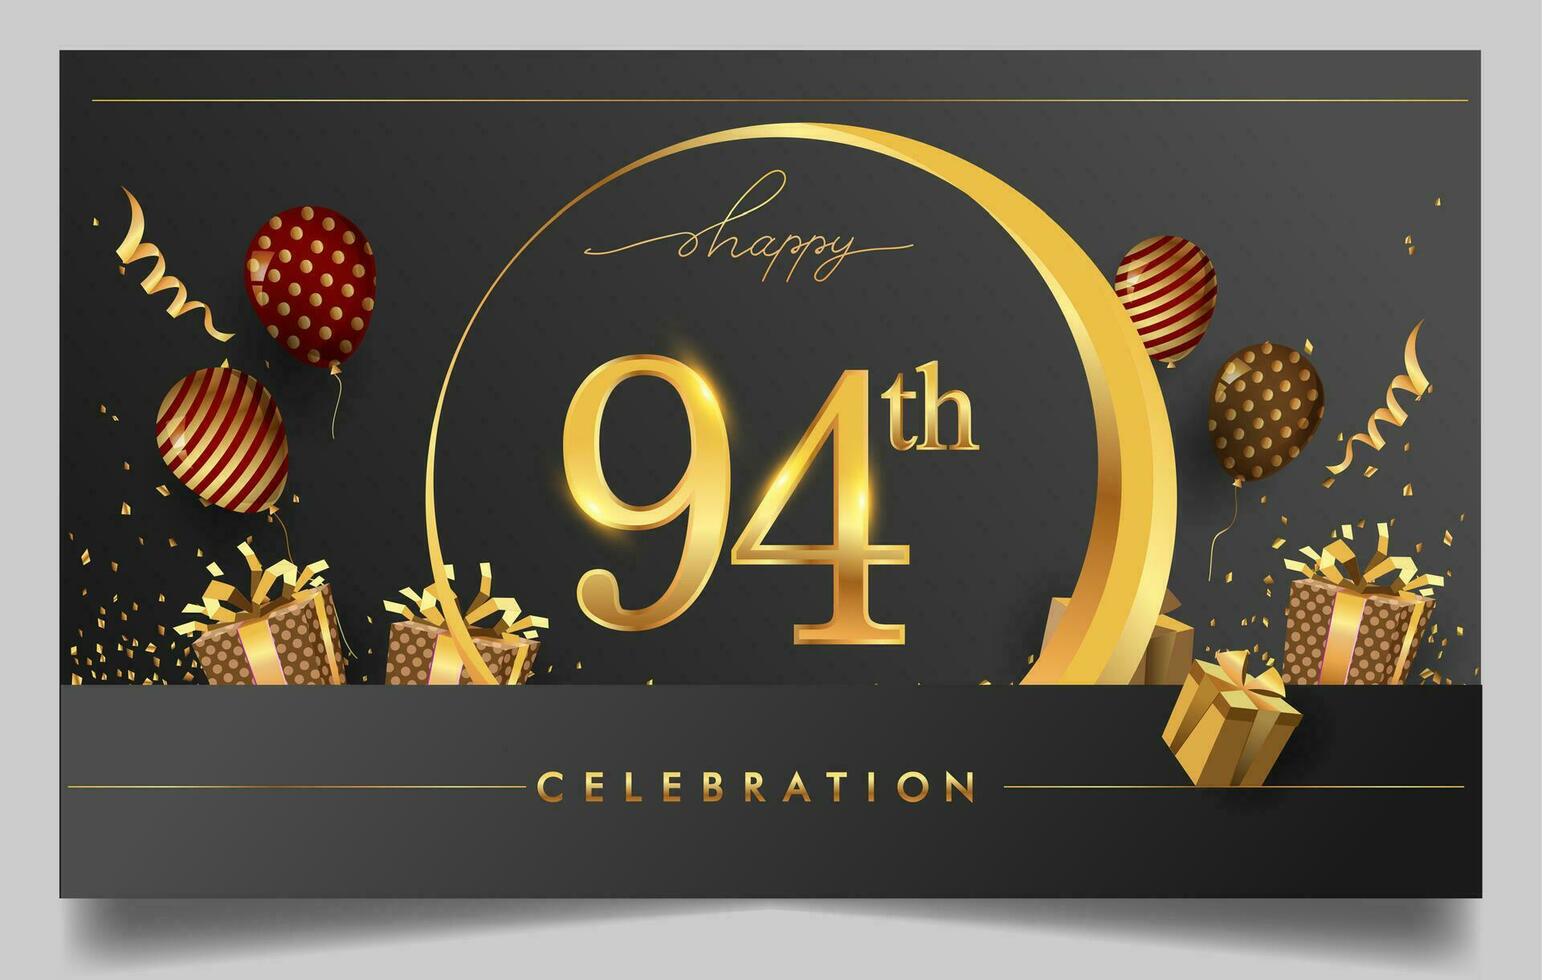 90ste jaren verjaardag ontwerp voor groet kaarten en uitnodiging, met ballon, confetti en geschenk doos, elegant ontwerp met goud en donker kleur, ontwerp sjabloon voor verjaardag viering. vector